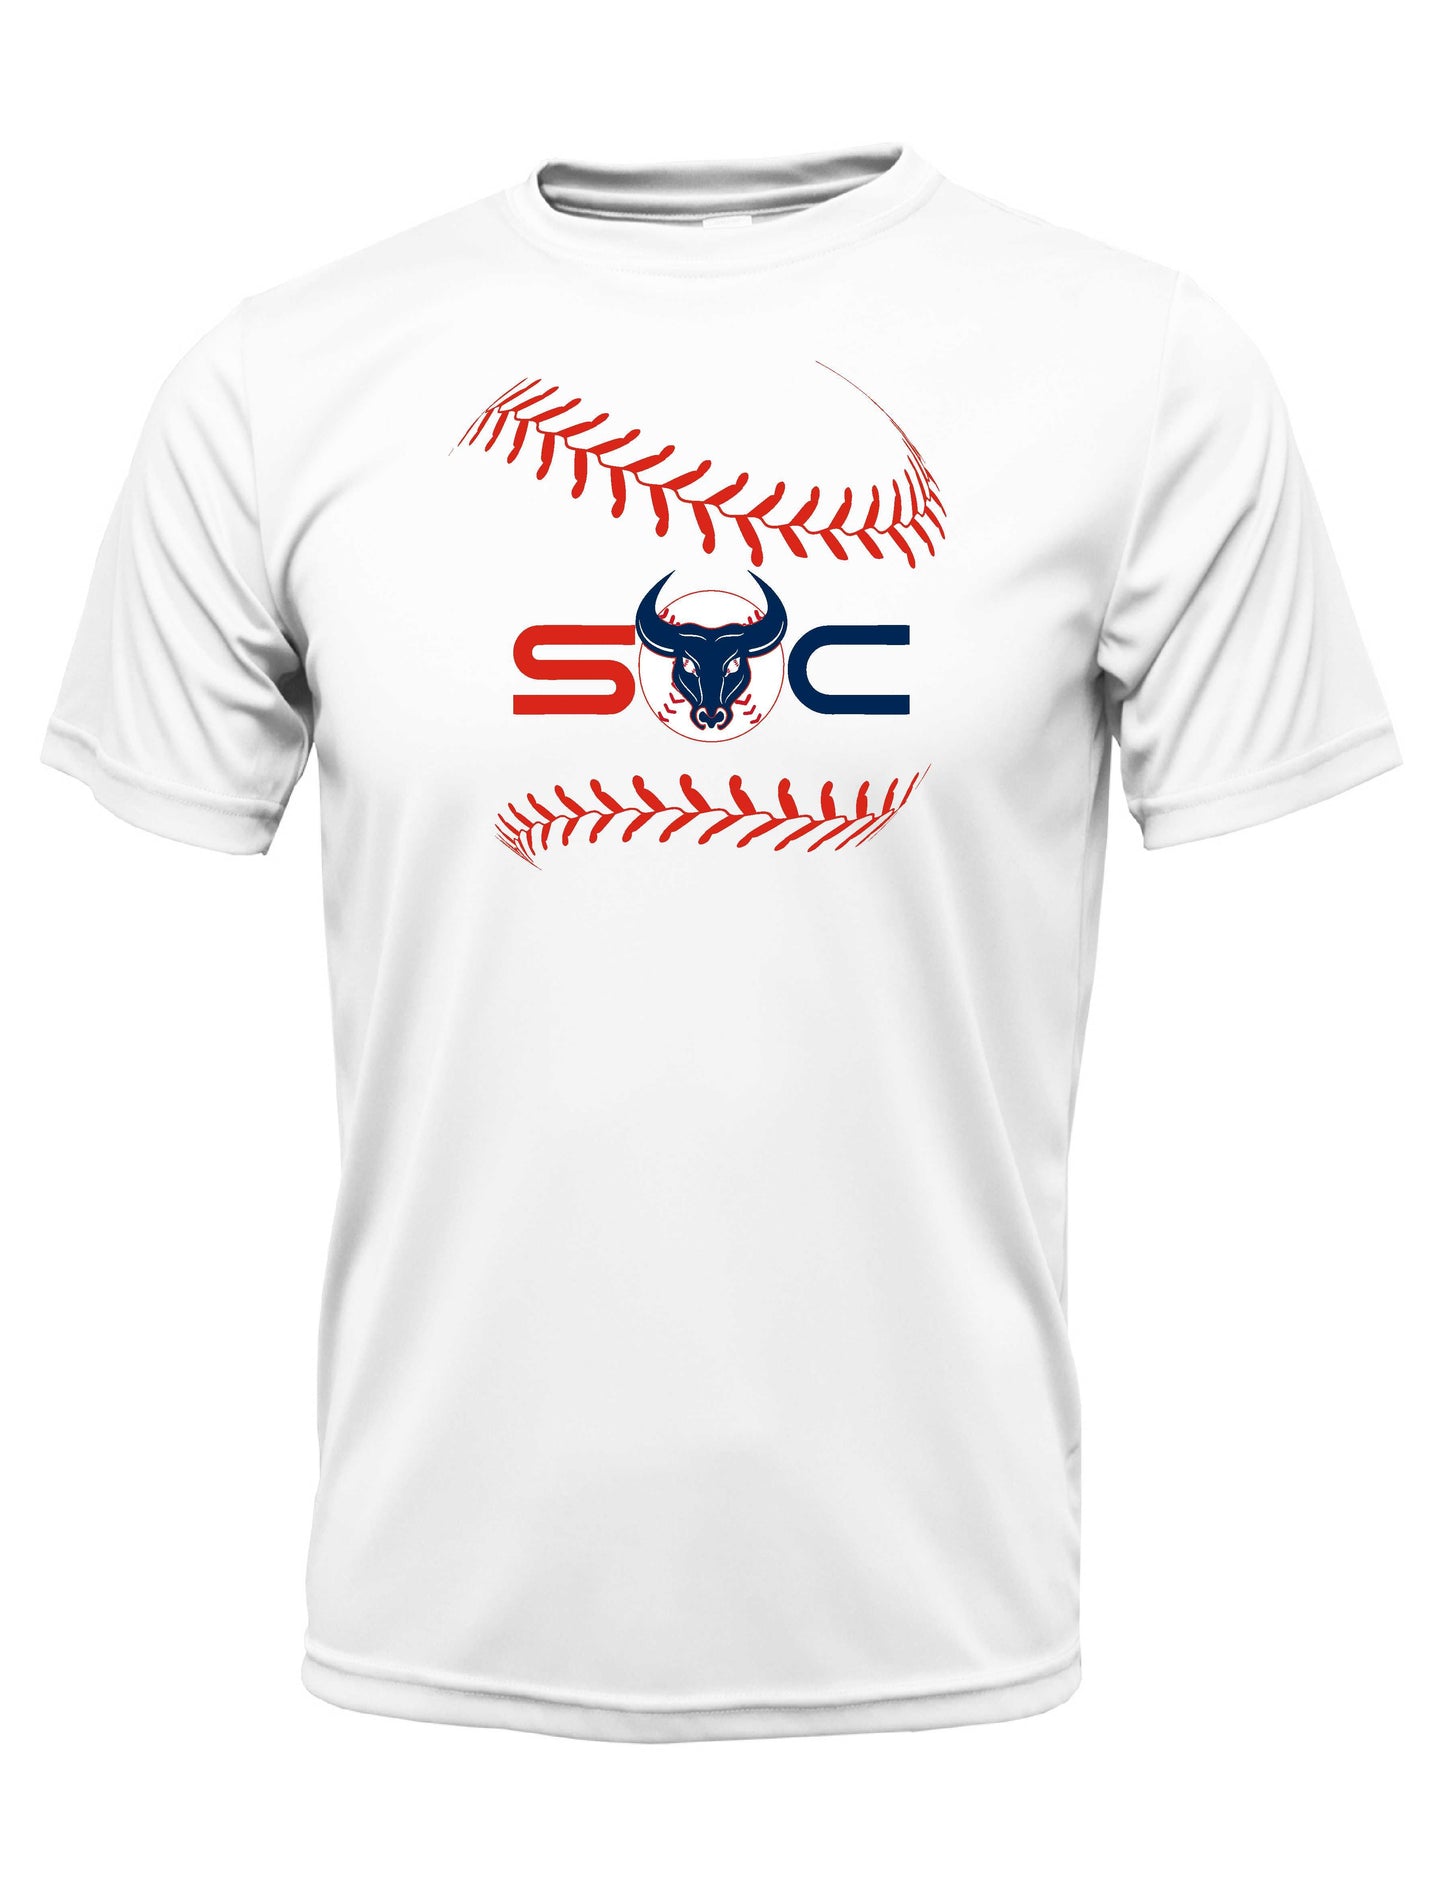 SC "Laces" Cotton T-shirt